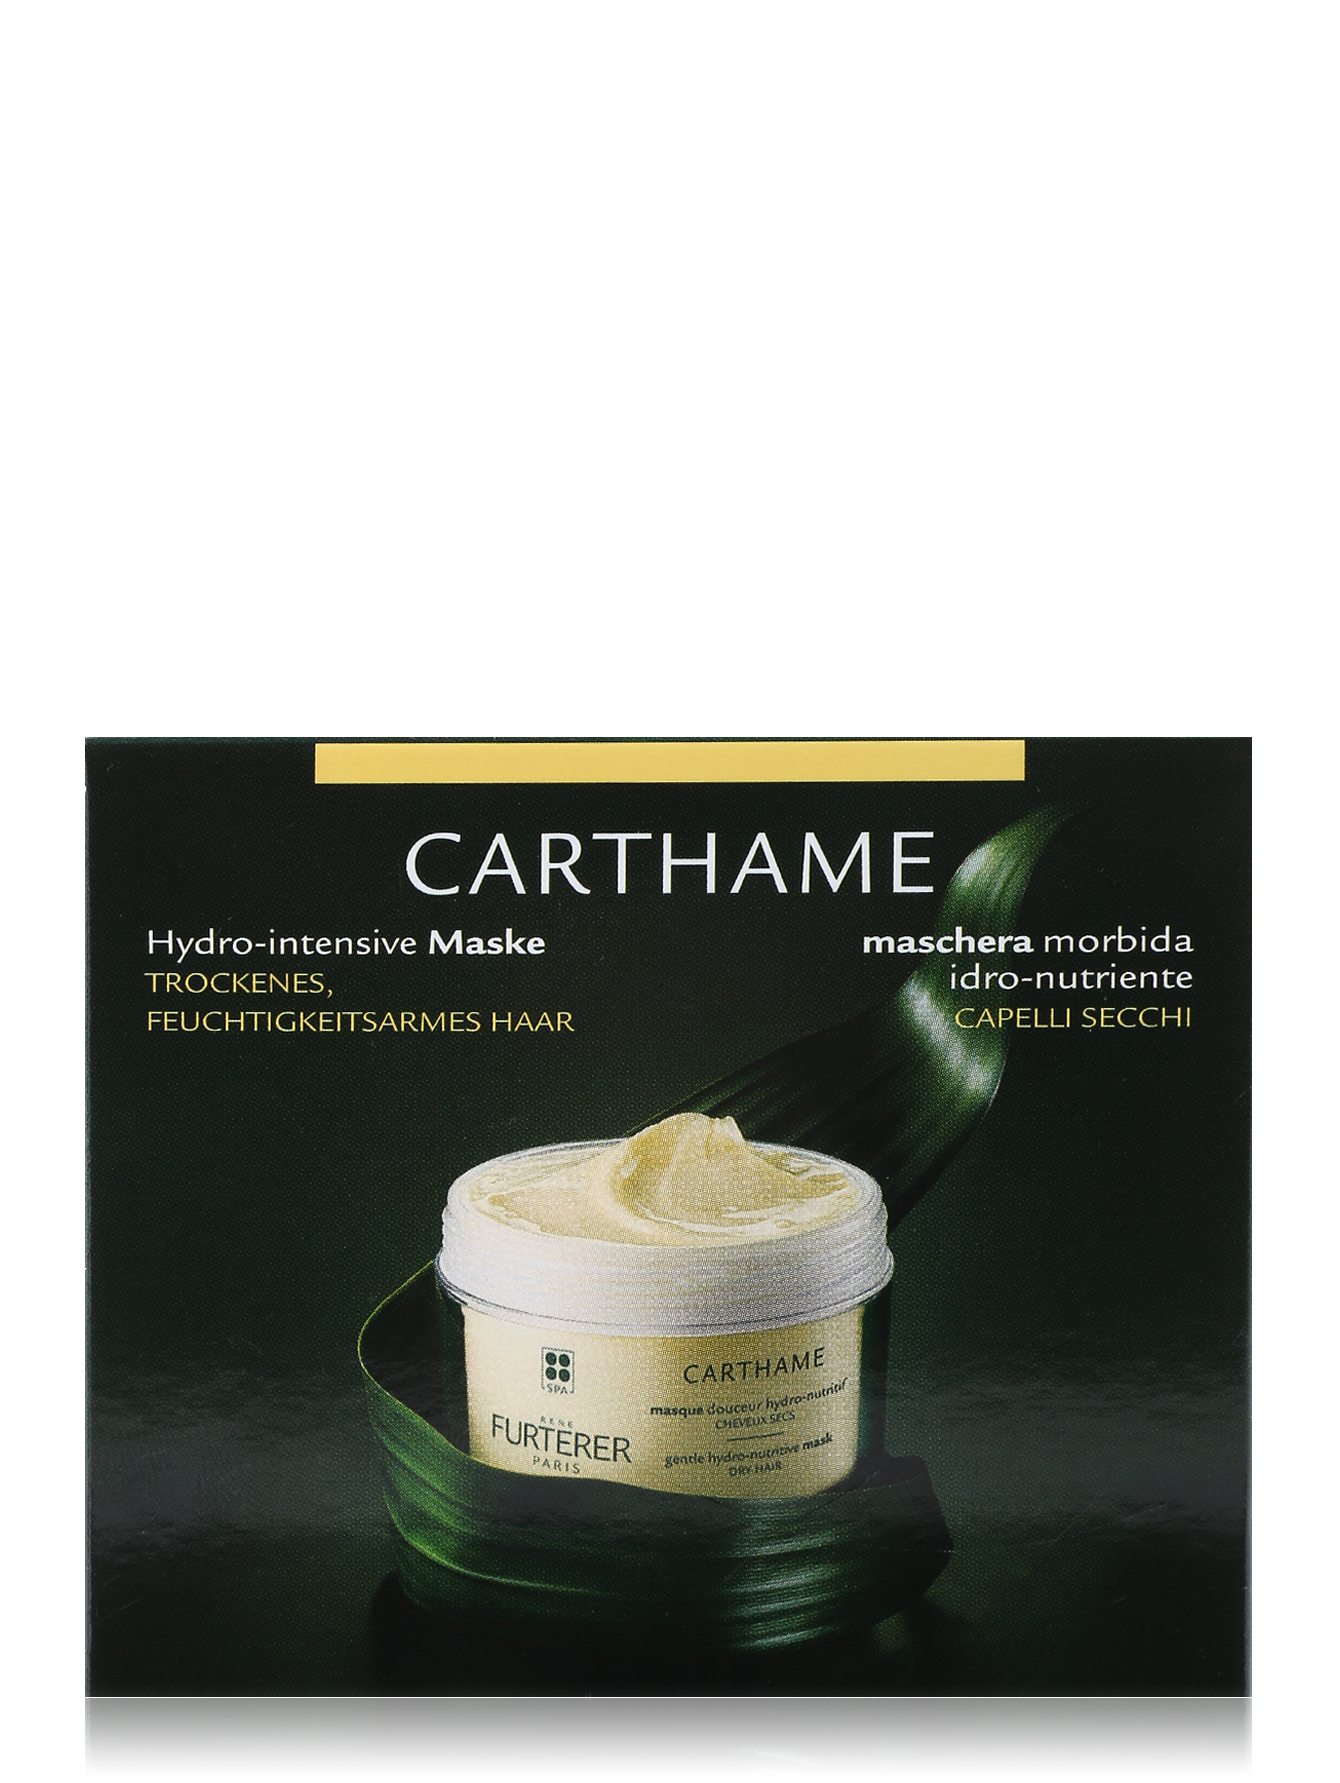 Увлажняющая маска для волос - Carthame, 200ml - Обтравка1